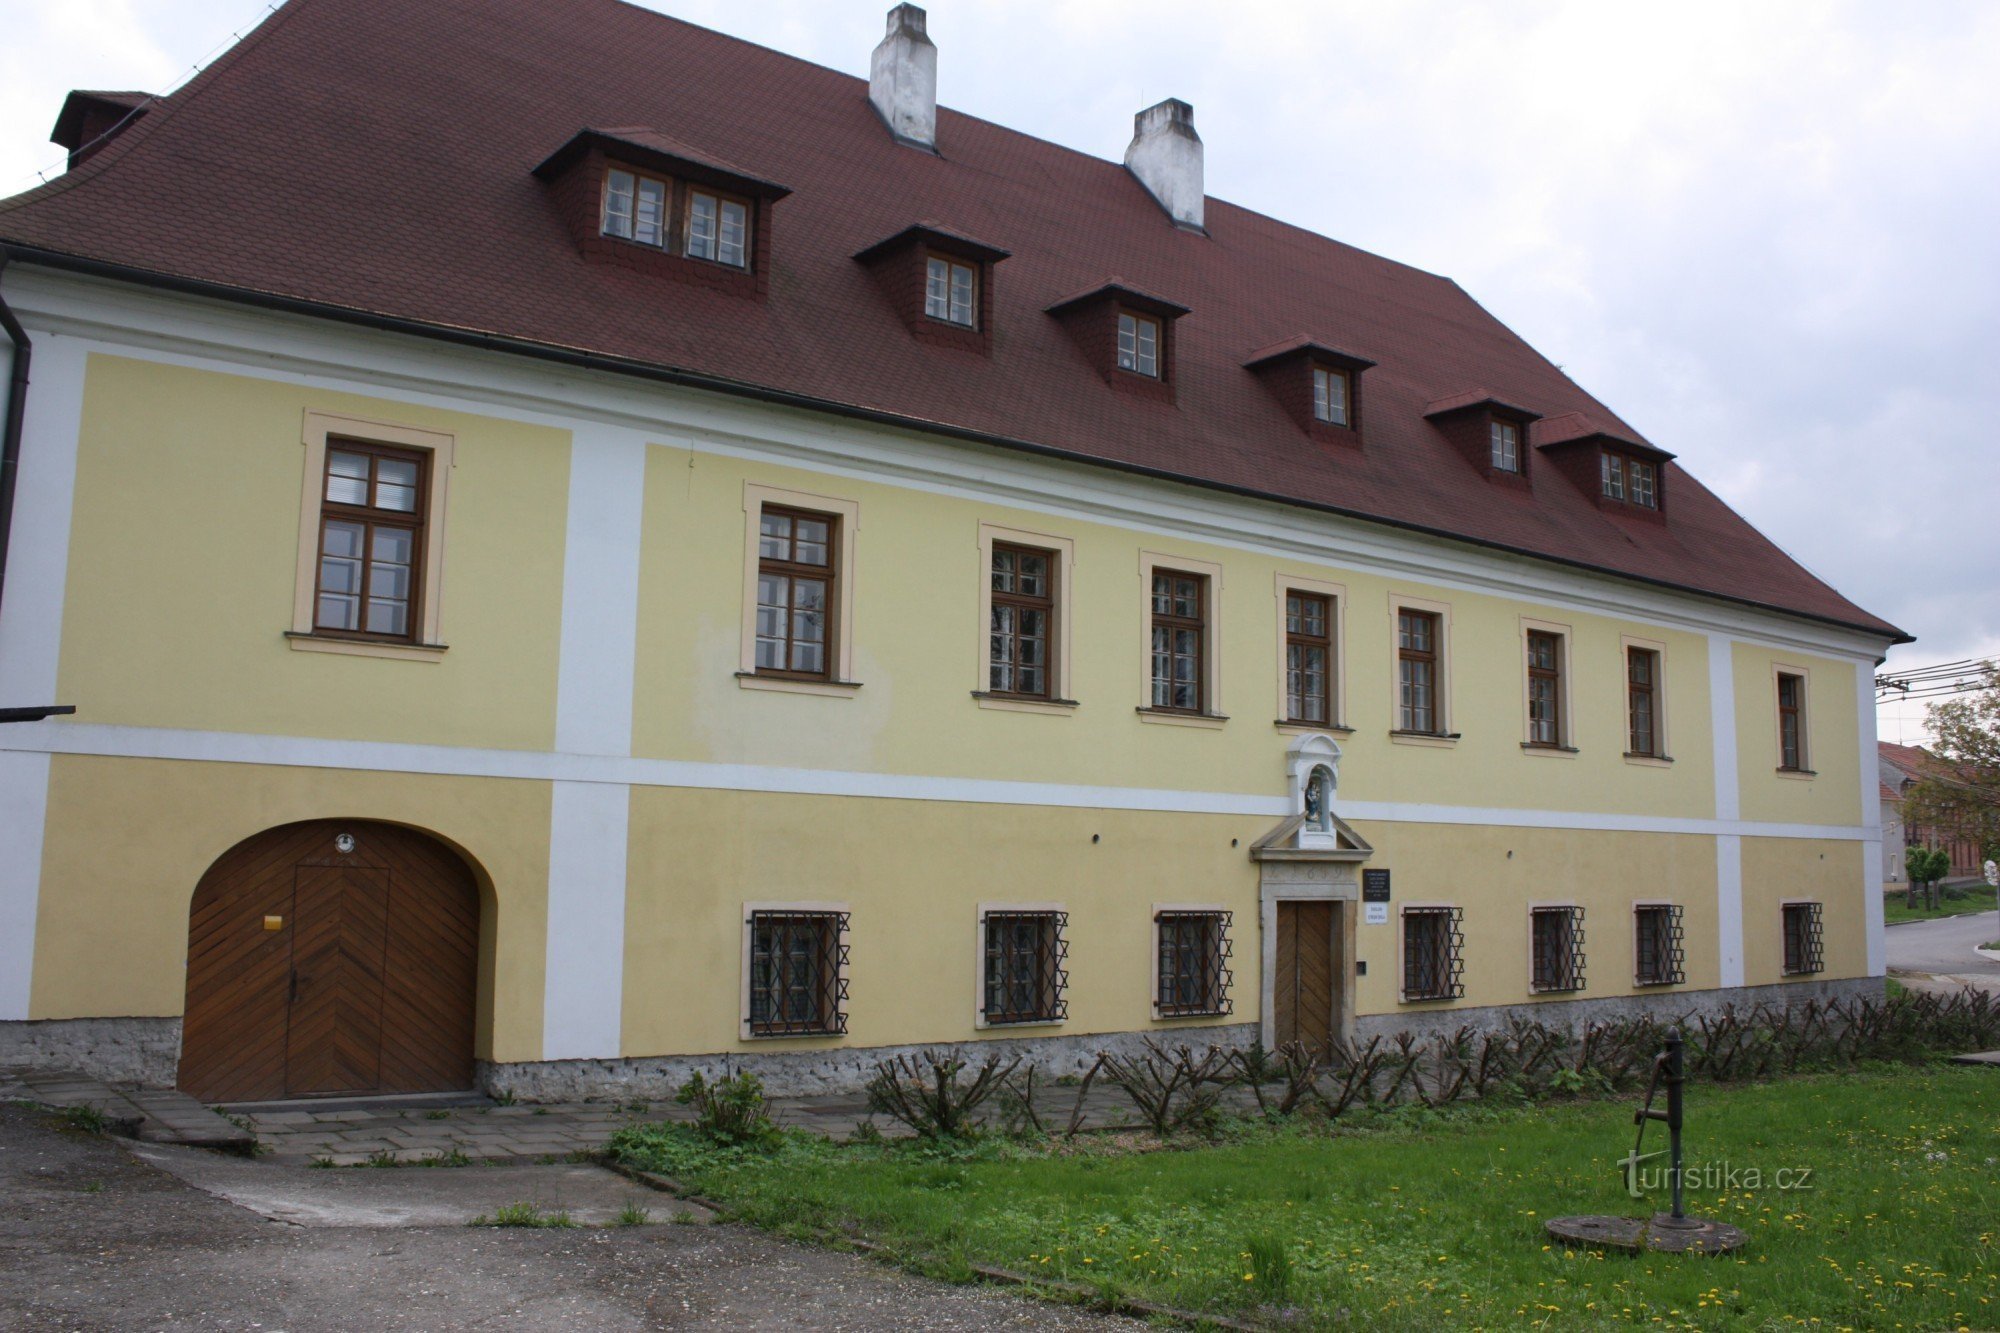 Sognebygning i Vřesovice nær Prostějov